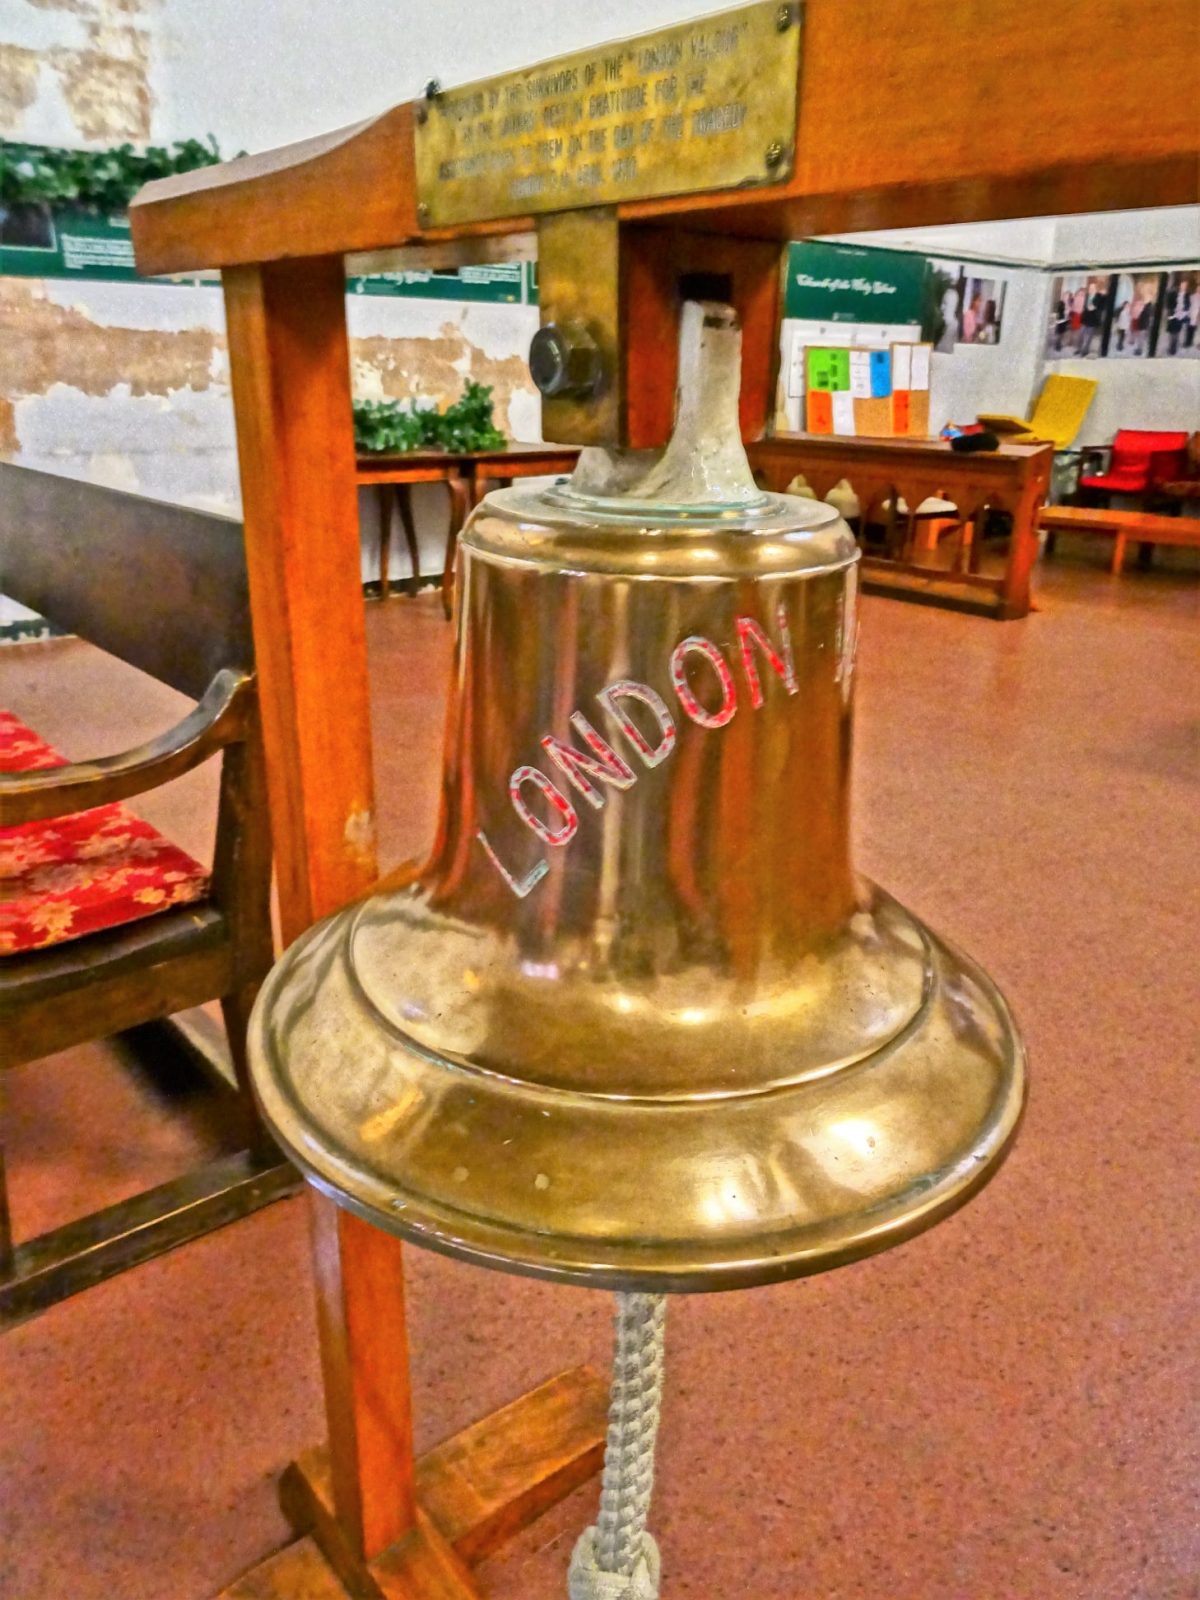 La campana della London Valour